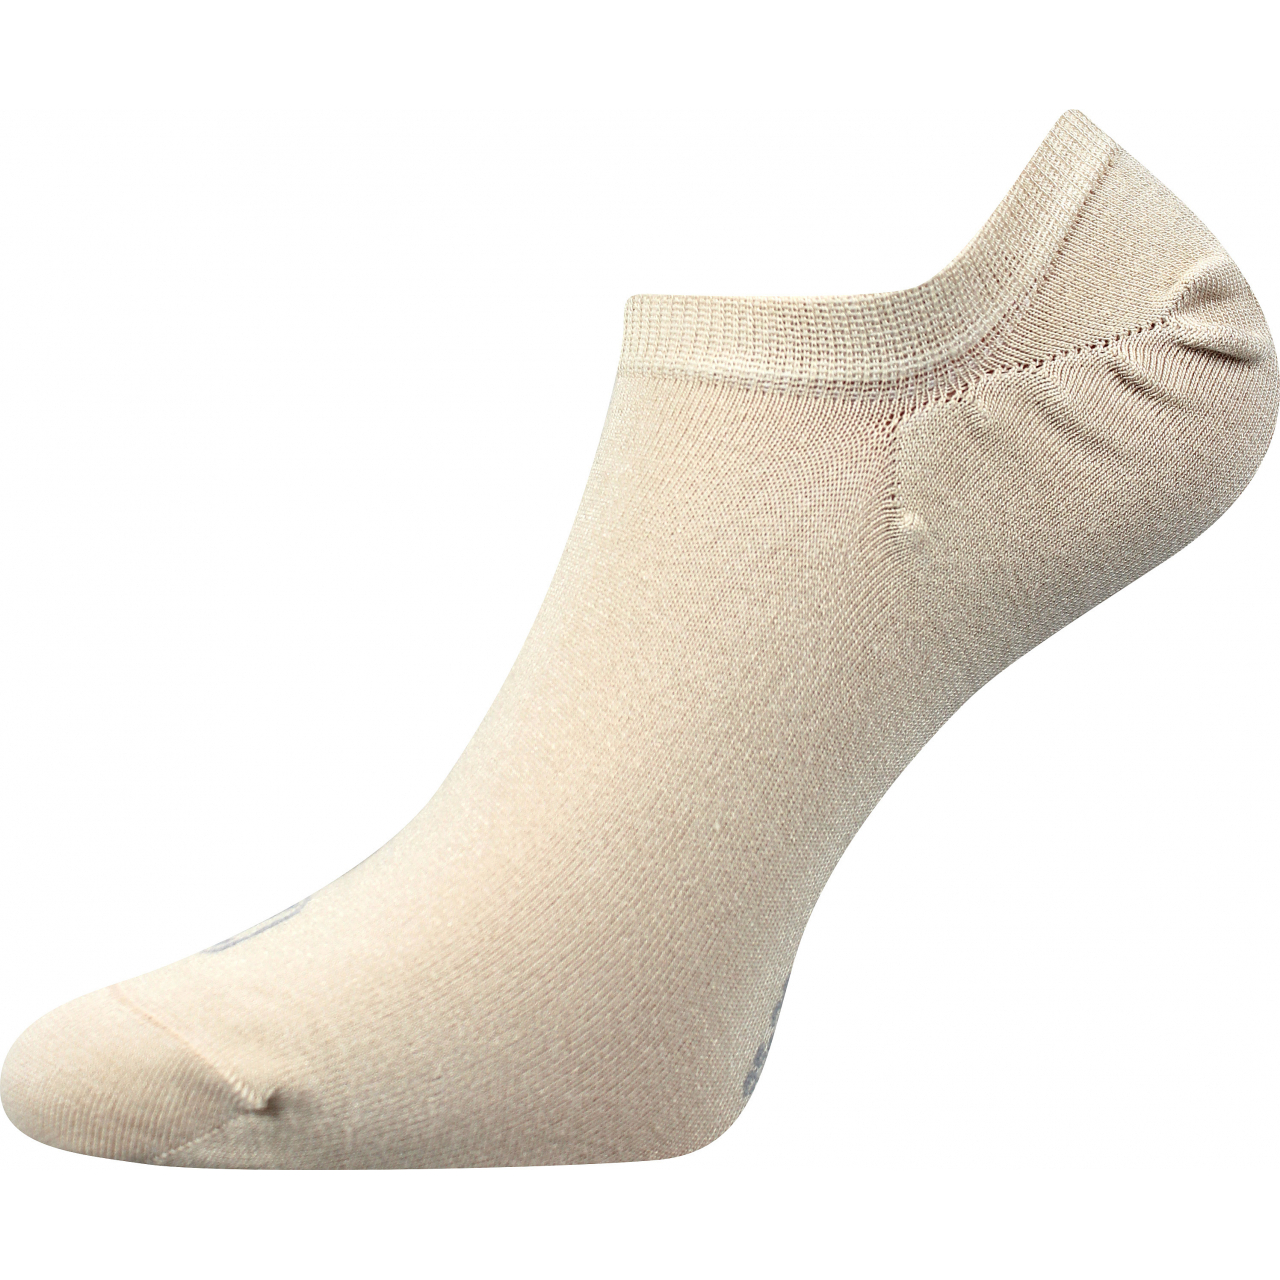 Ponožky bambusové unisex Lonka Dexi - béžové, 35-38